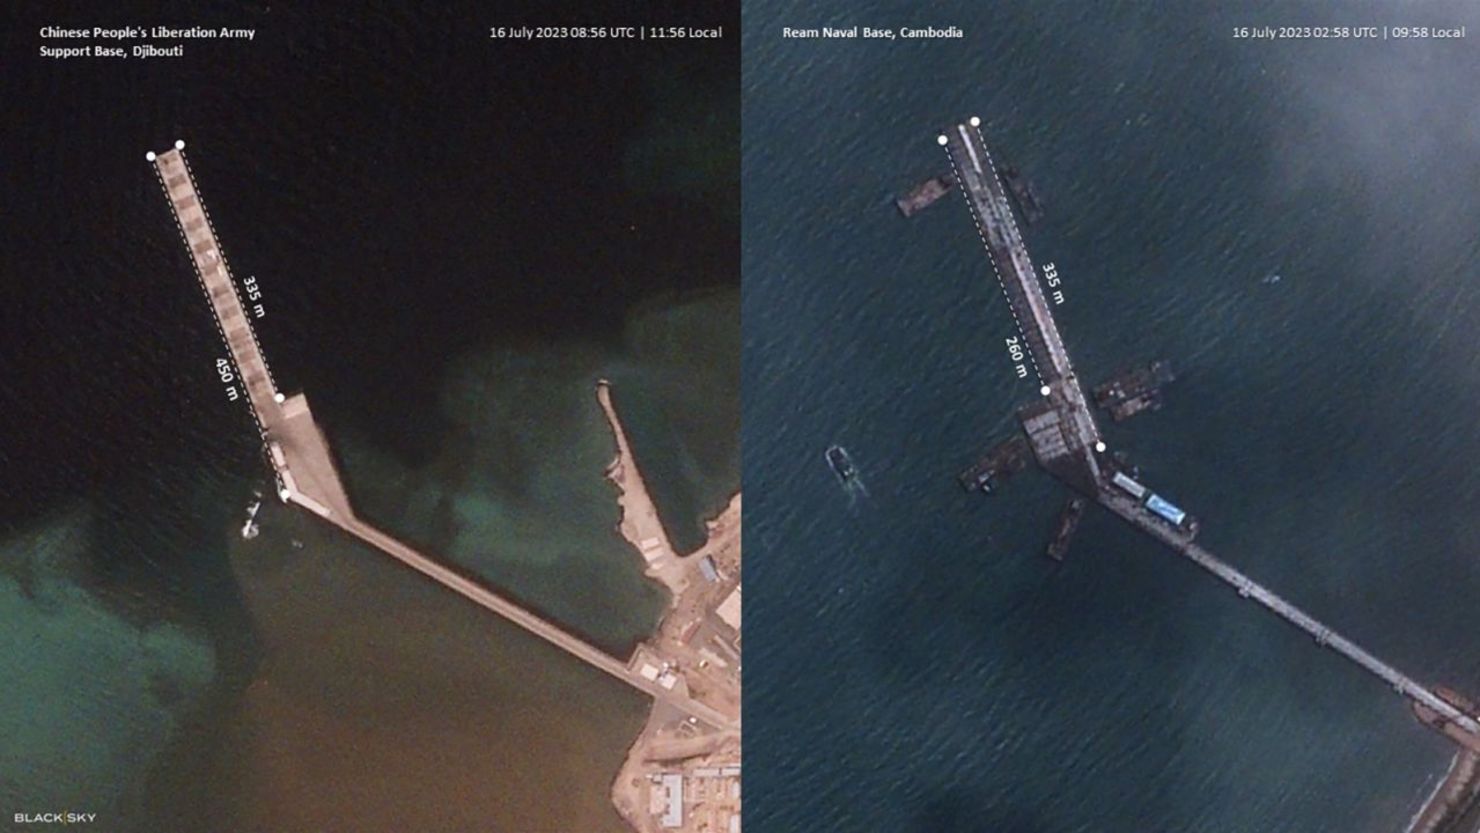 Imágenes de satélite de BlackSky facilitadas a CNN muestran a la izquierda el muelle de la Base de Apoyo del Ejército Popular de Liberación de China en Yibuti, África Oriental, y la Base Naval de Ream en Camboya, el 16 de julio de 2023.